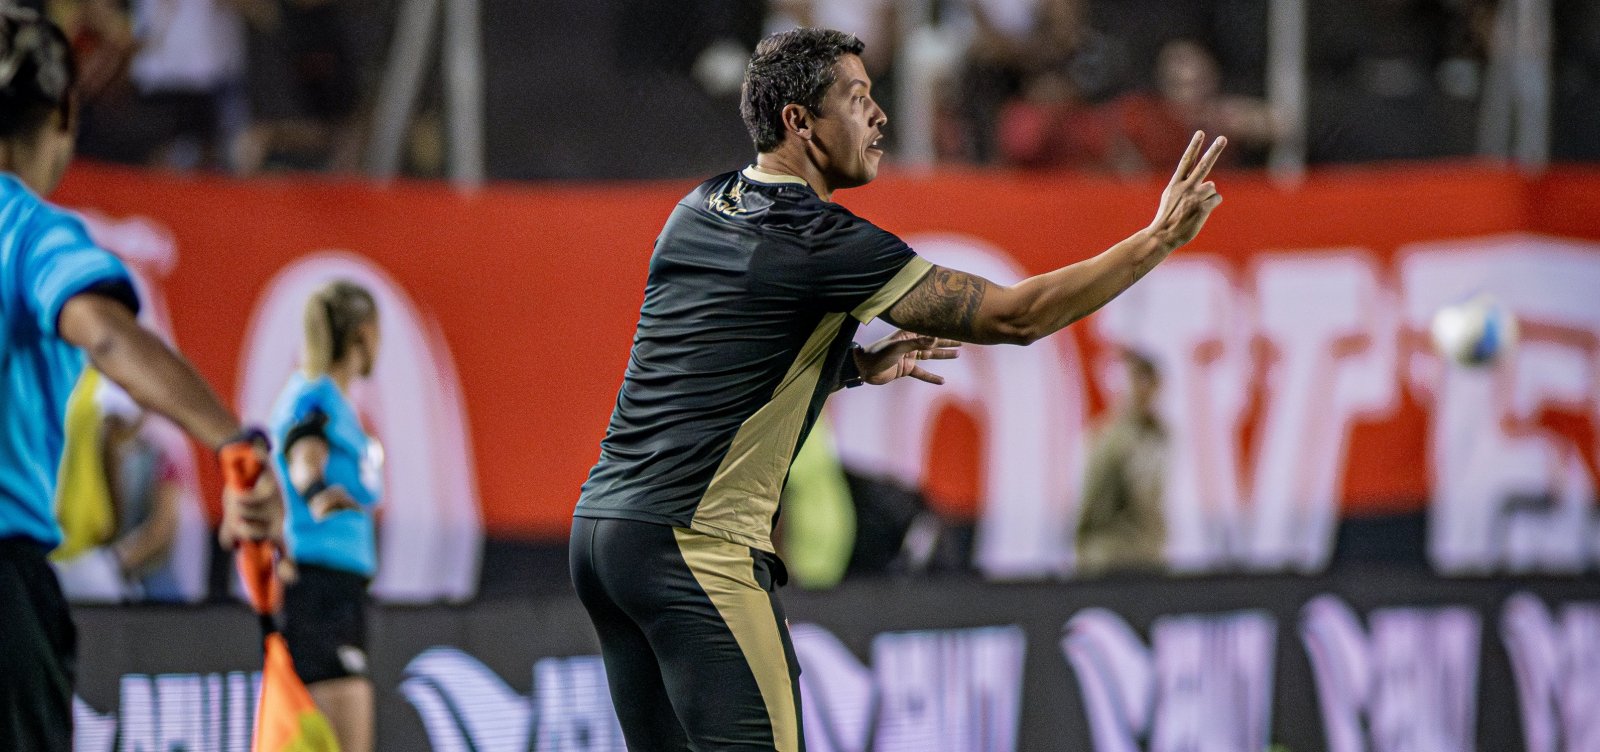 Carpini destaca desempenho inicial do Vitória diante do Botafogo, mas faz alerta: "Precisamos ser mais efetivos"